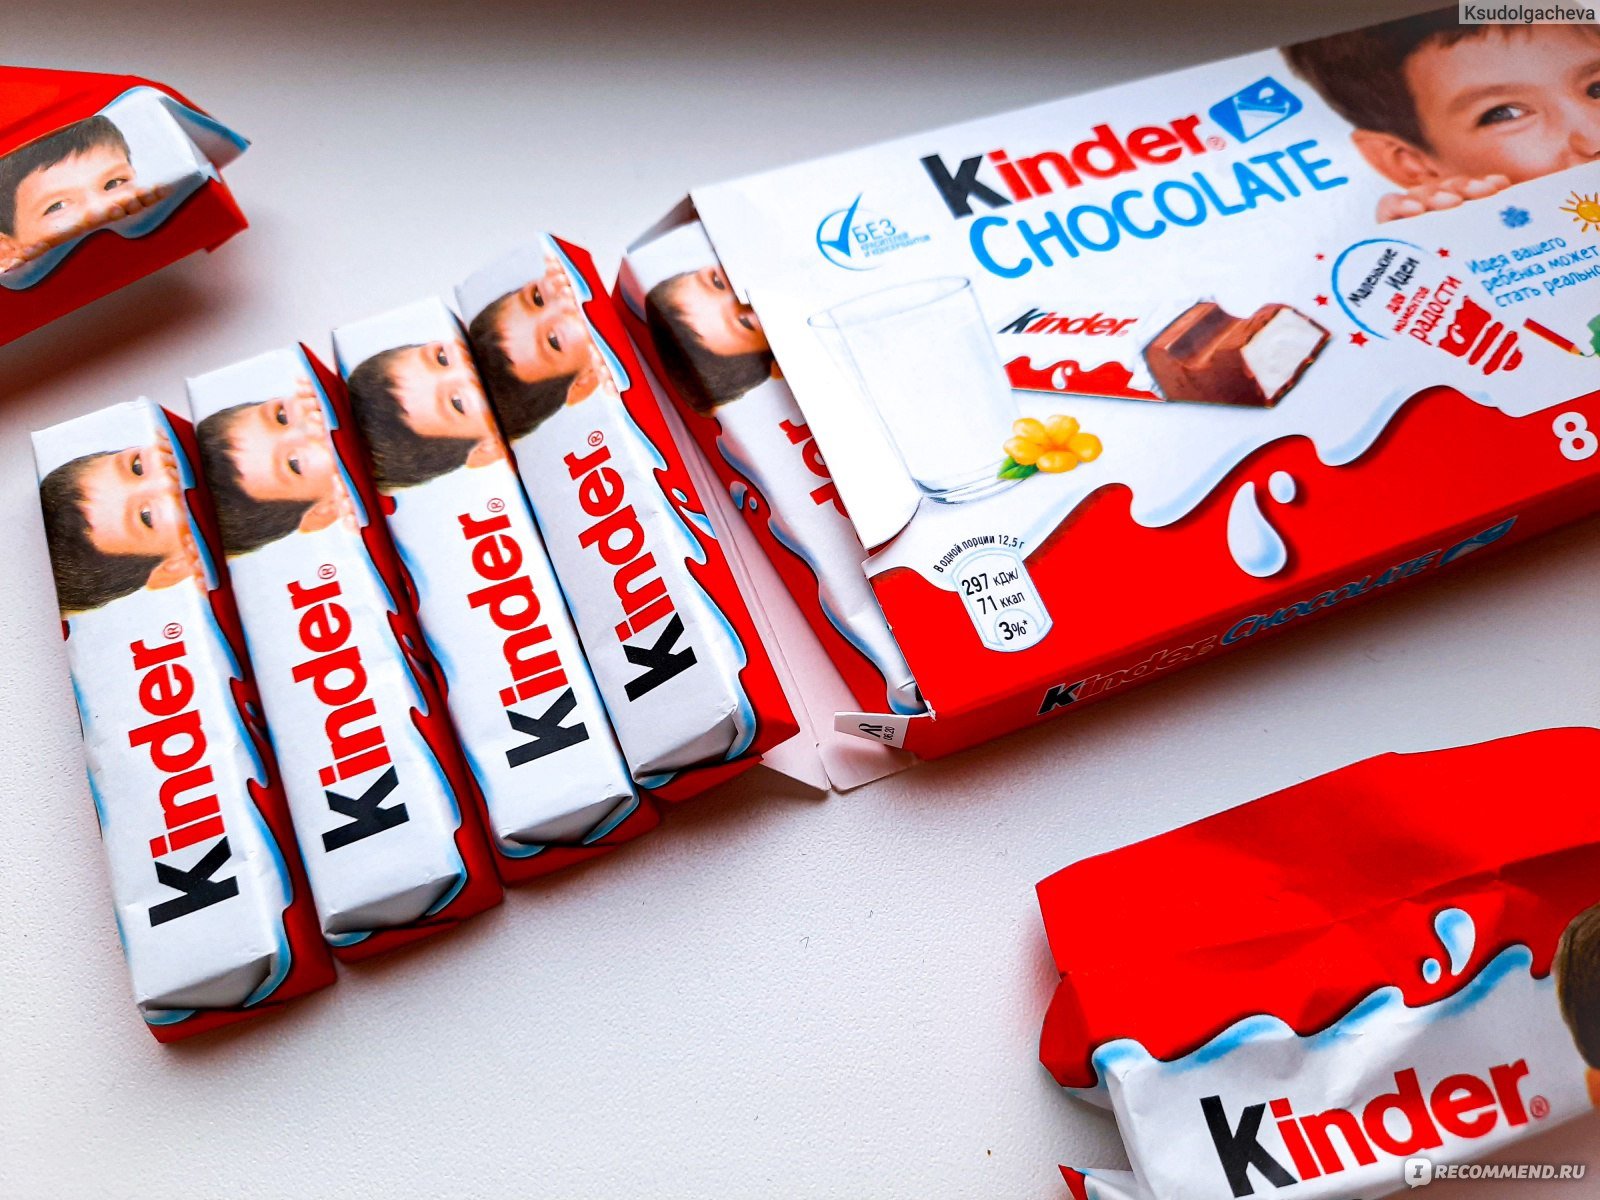 Киндер 8 порций. Шоколадка Киндер. Kinder шоколадки. Kinder Chocolate упаковка. Упаковка шоколадок Киндер.